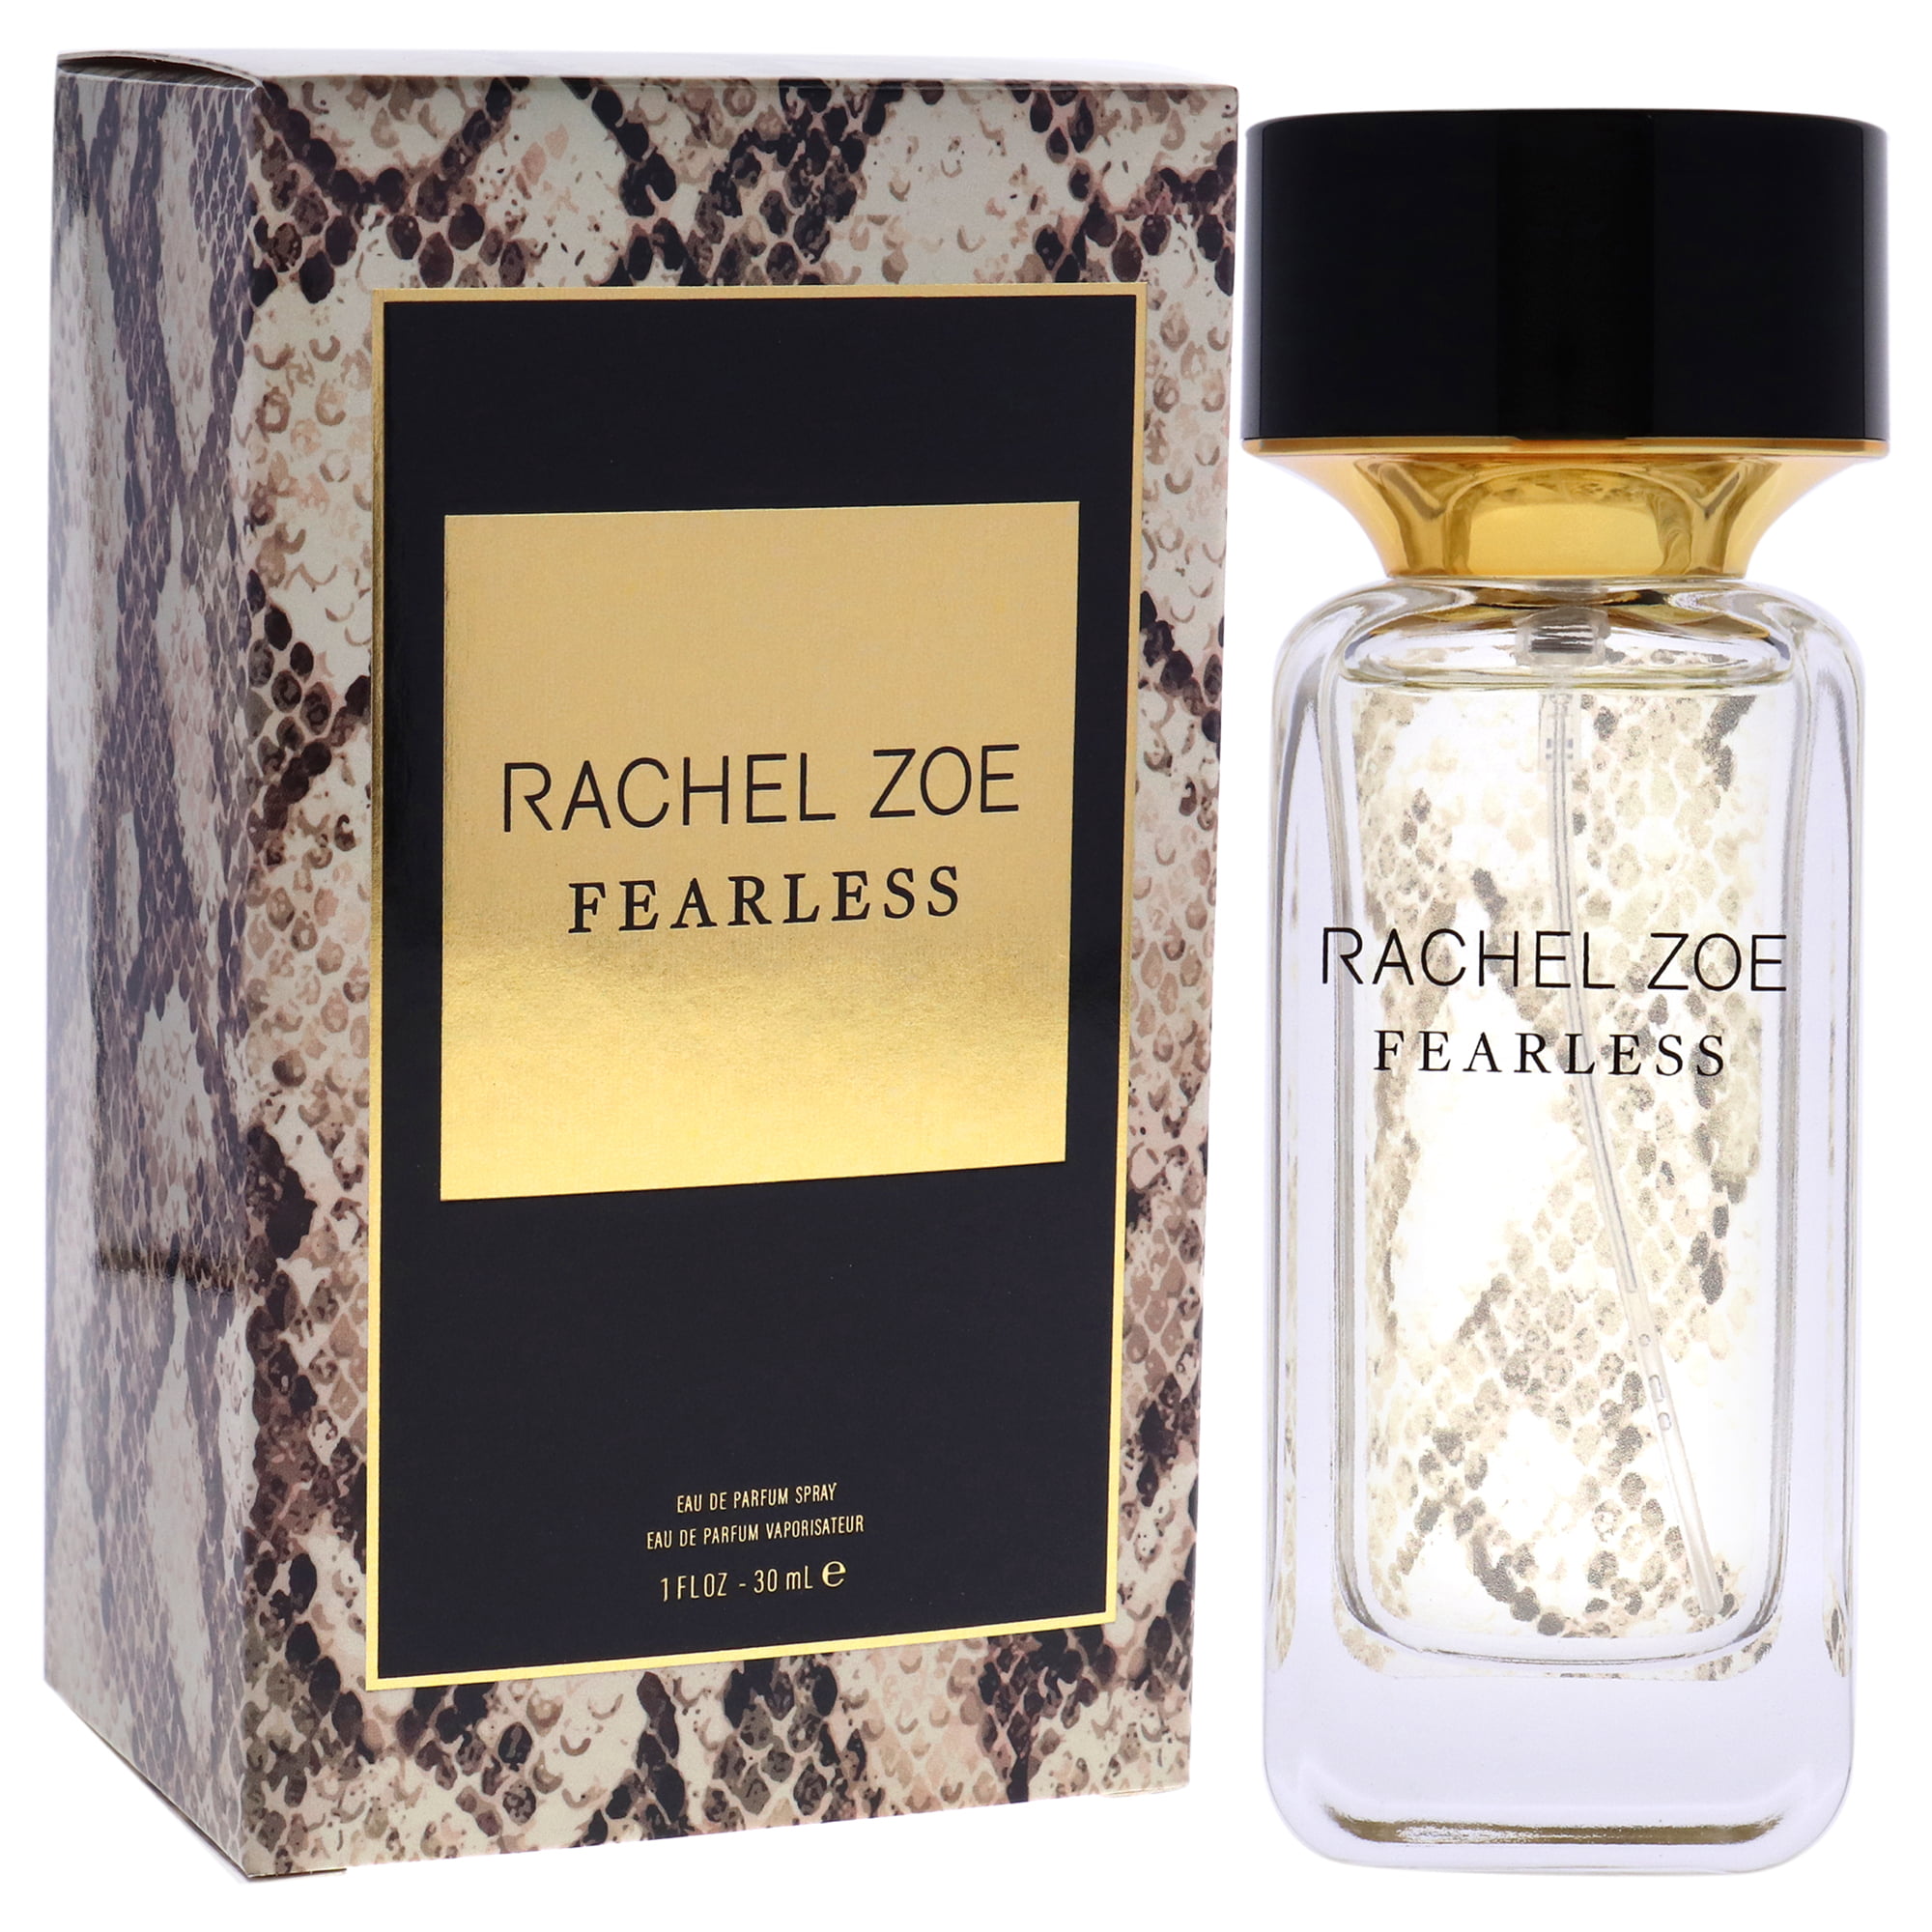 Fearless by Rachel Zoe for Women - 1 oz EDP Spray